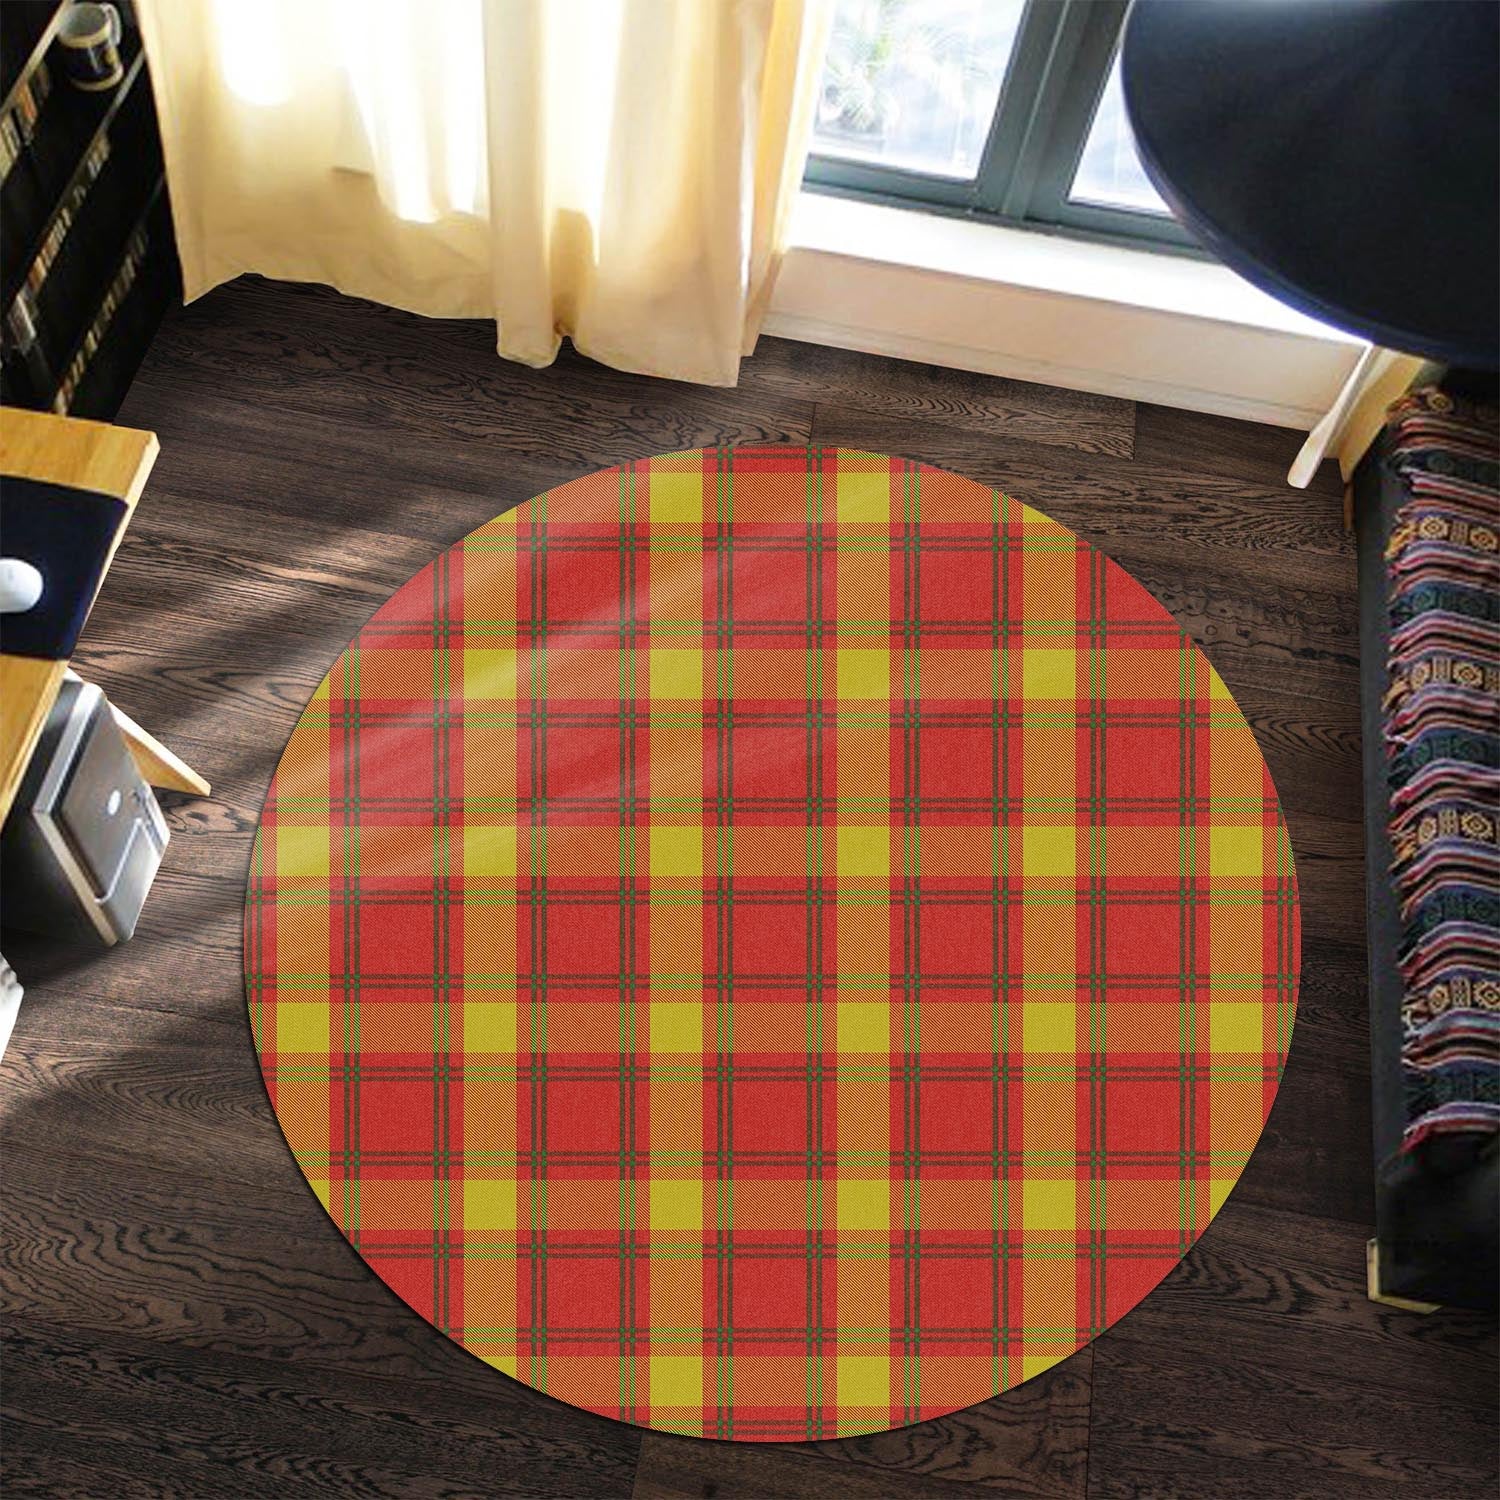 maguire-modern-tartan-round-rug